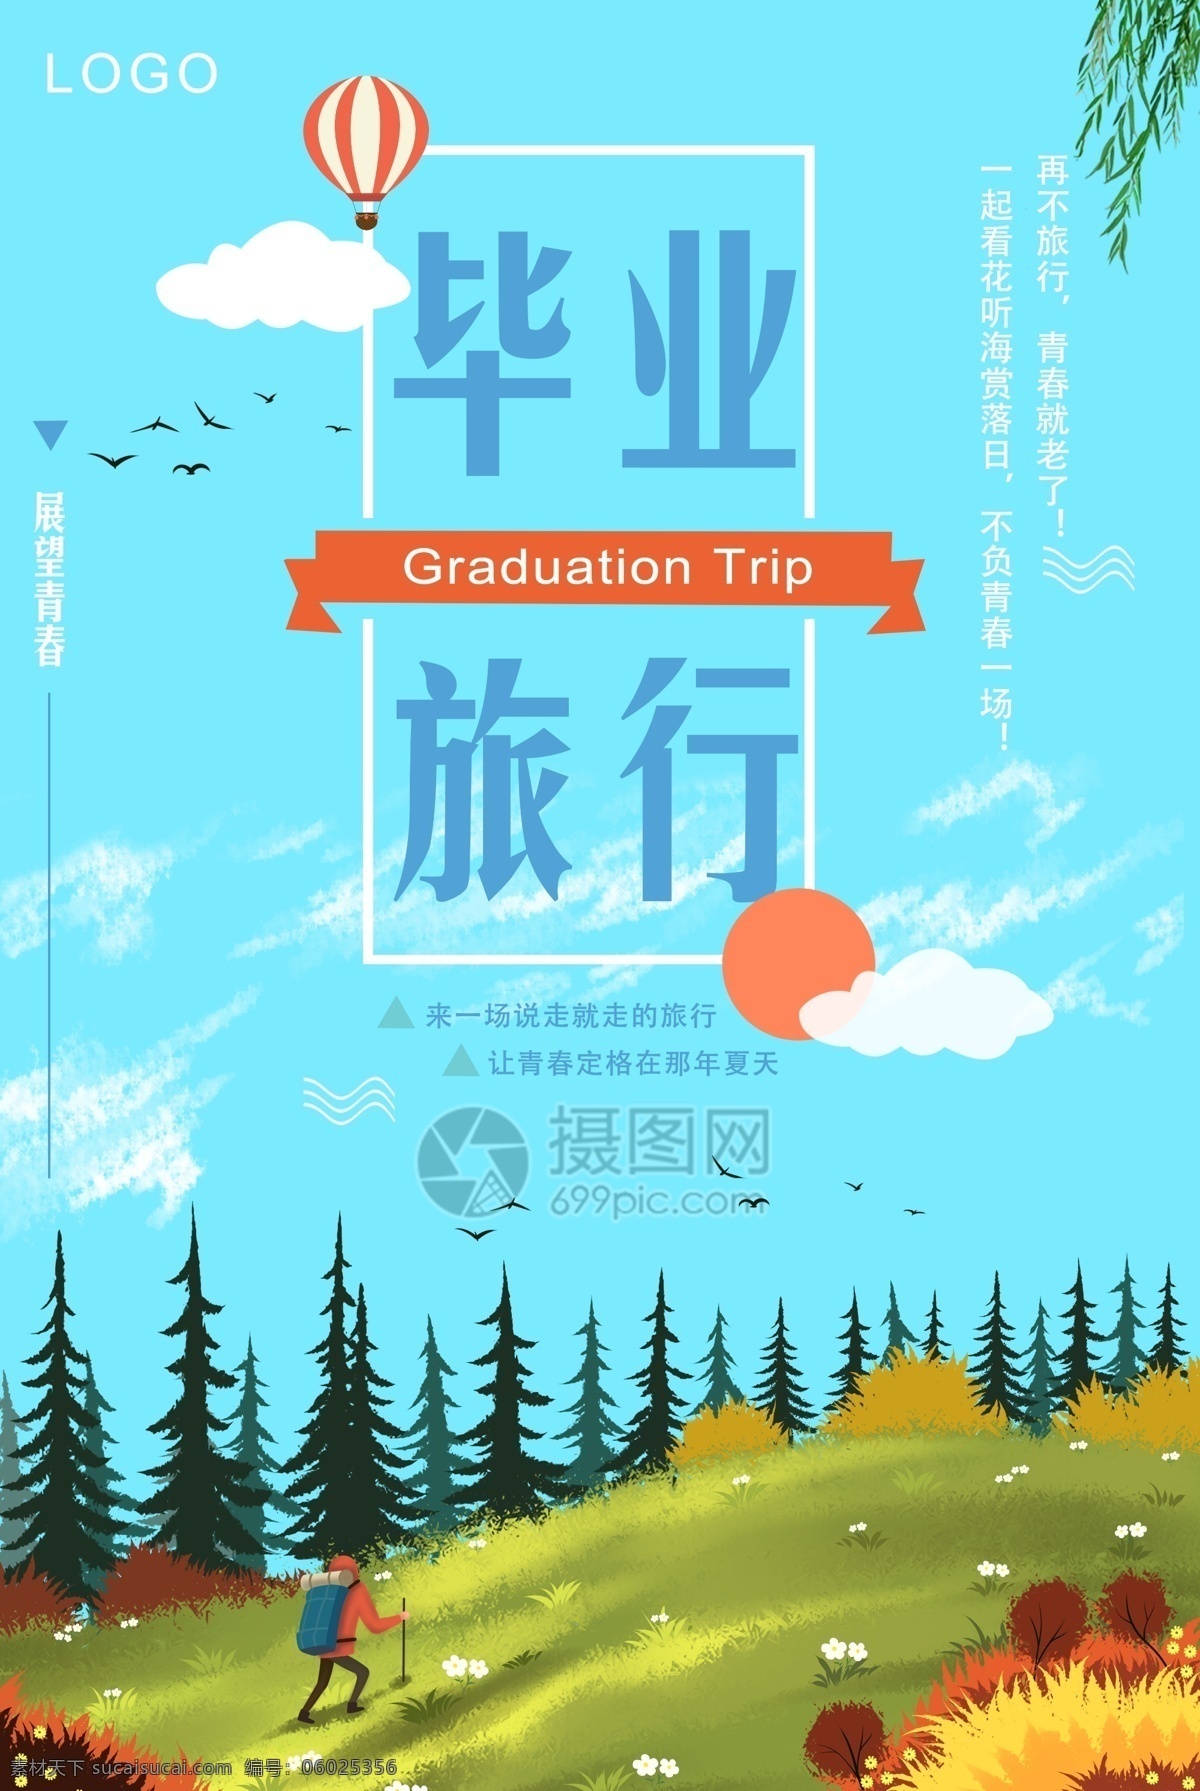 毕业 旅行 海报 说走就走 青春 回忆 毕业游 毕业旅行 创意海报